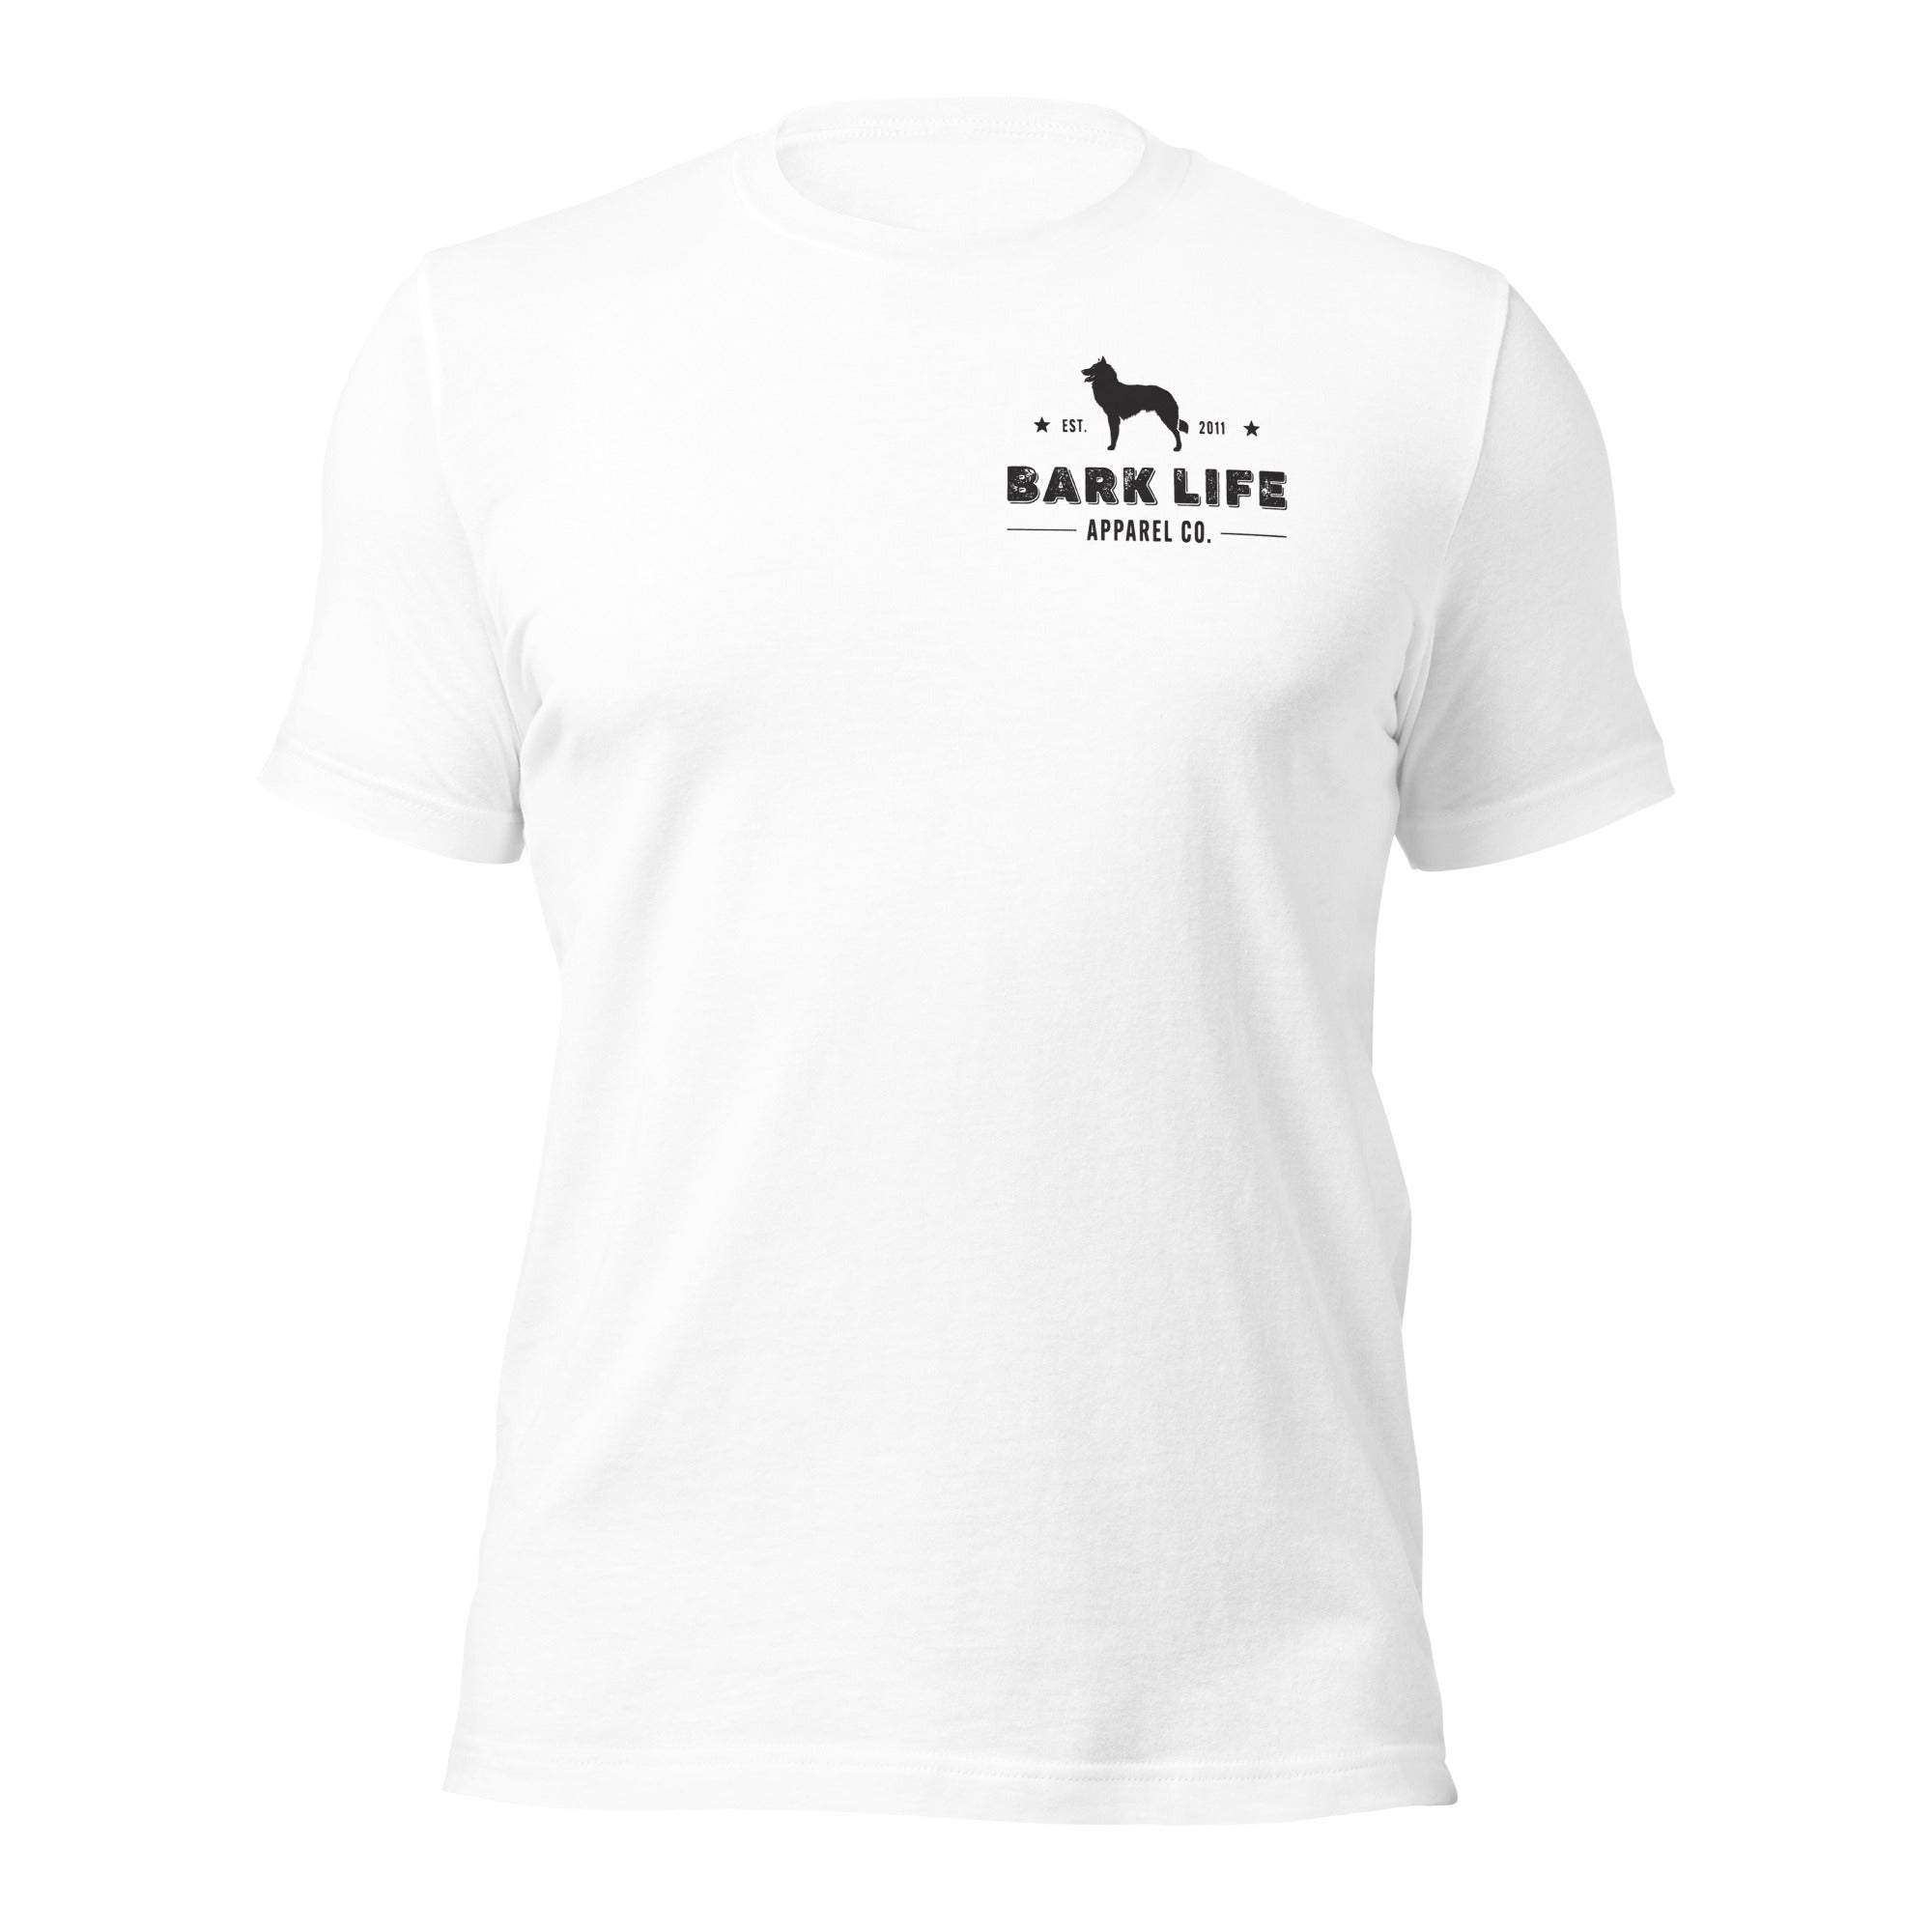 Groenendael - Short Sleeve Cotton Tee Shirt